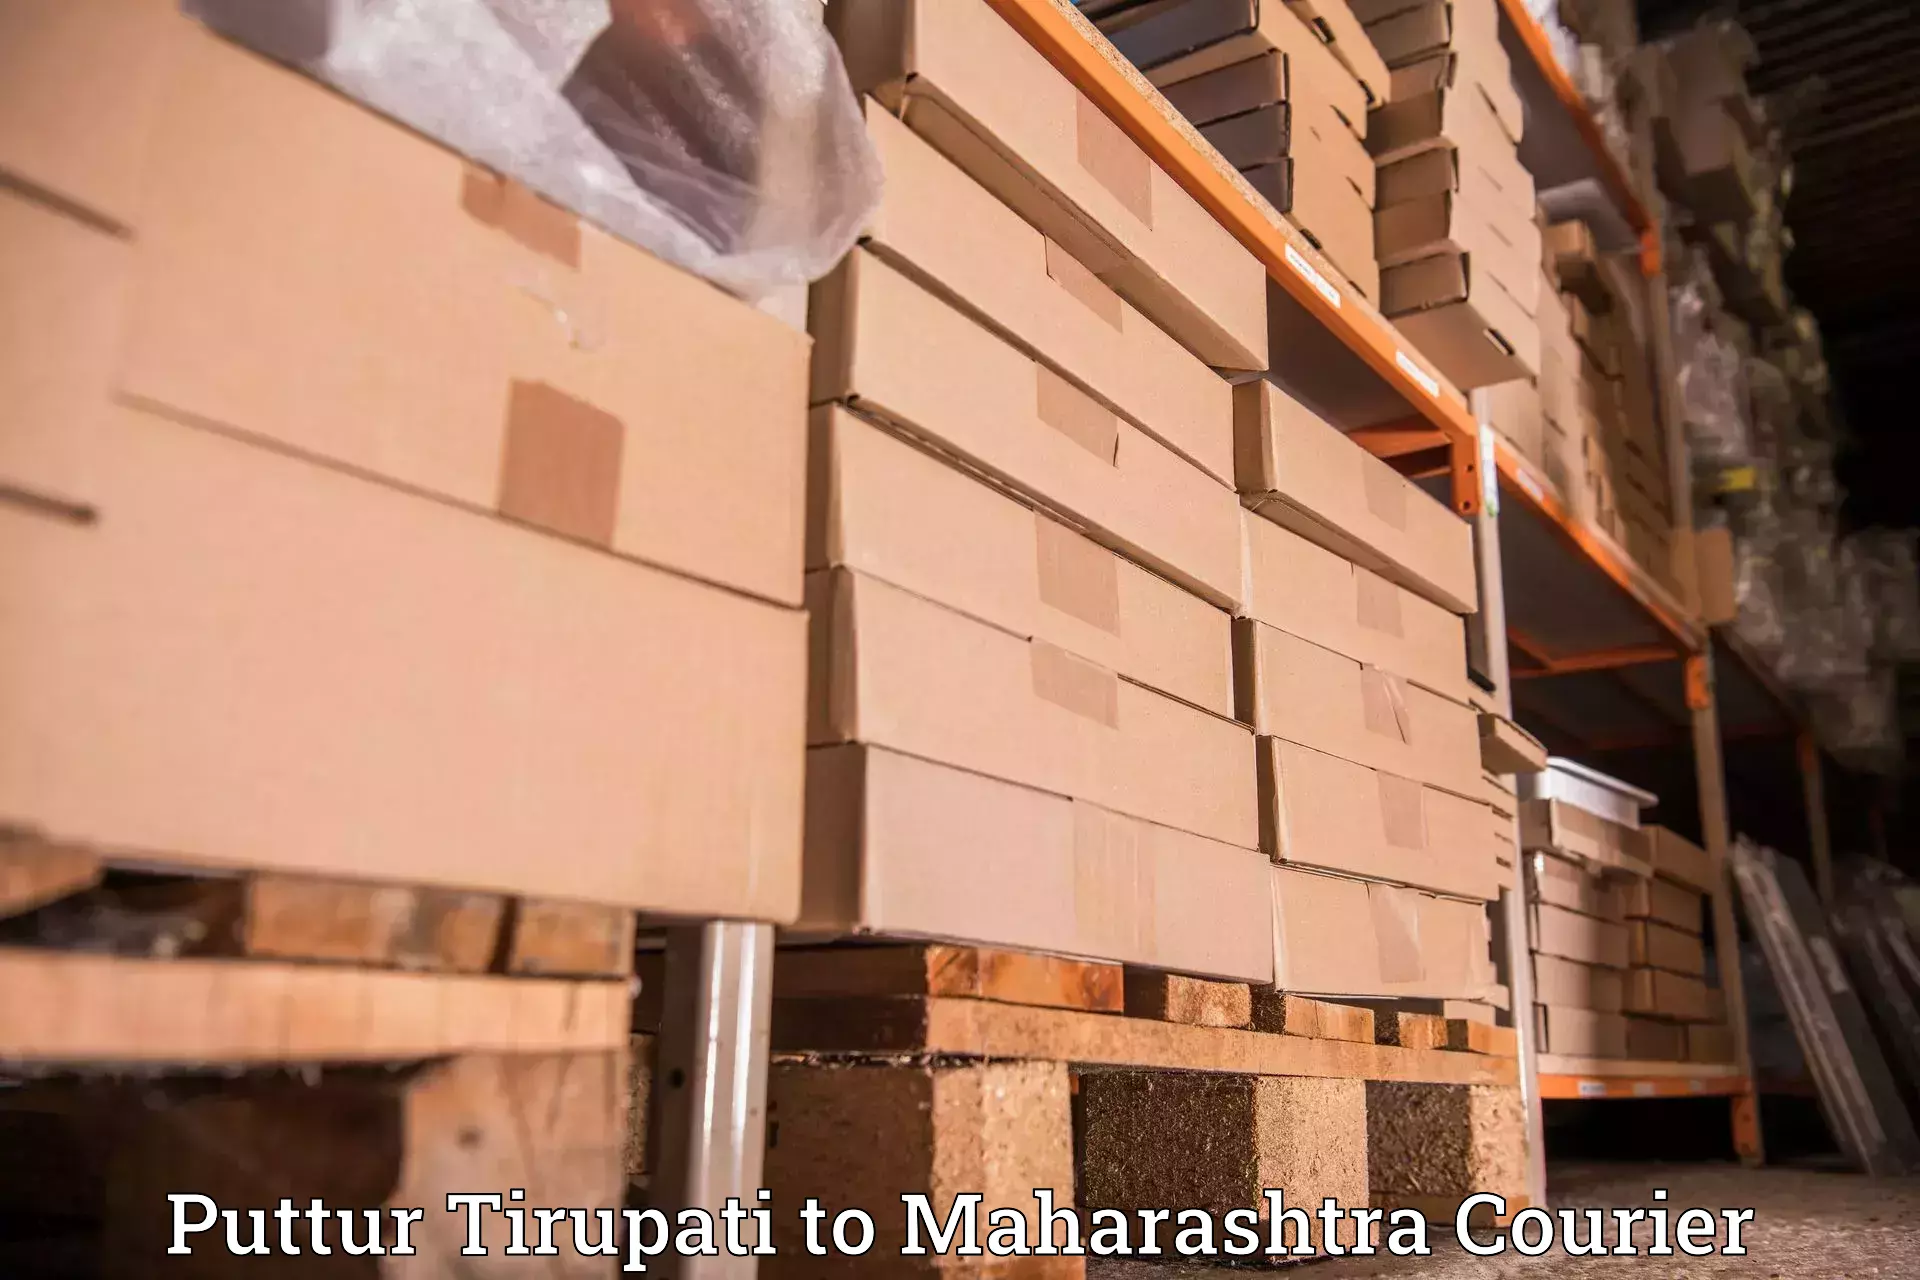 Global shipping networks Puttur Tirupati to Maharashtra